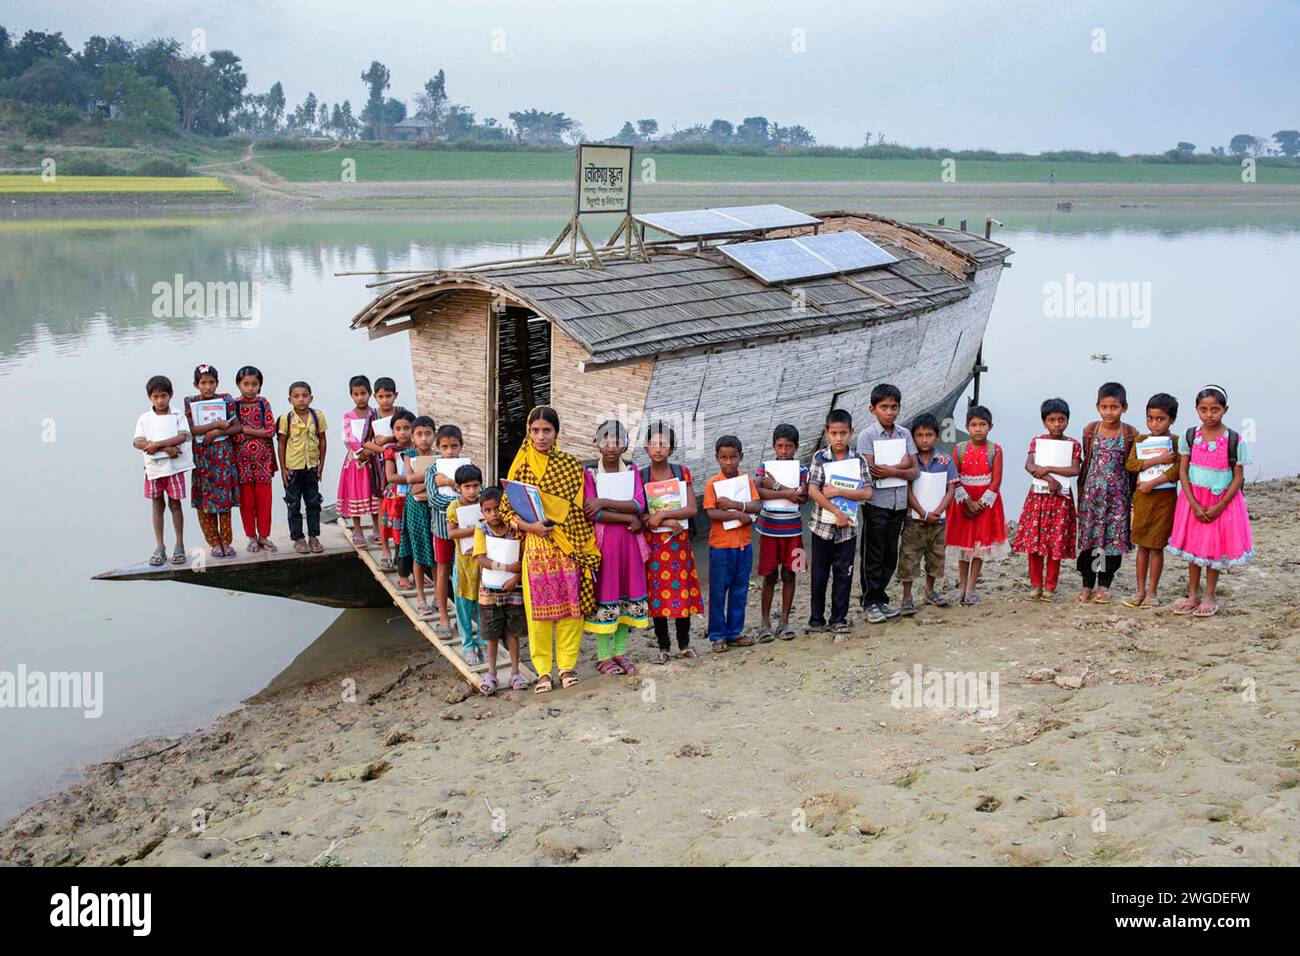 Élèves de la classe III, posez pour une photo de groupe après la fin des cours devant l’école nautique Horondarpur. Le pays a été inondé à deux reprises en 2007 et 332 écoles ont été détruites et 4 893 écoles ont été endommagées. Shidhulai exploite une flotte d'écoles flottantes, de bibliothèques, de cliniques de santé, d'ateliers solaires et de centres de formation flottants avec accès Internet sans fil, desservant près de 97 000 familles dans les régions sujettes aux inondations. Les bateaux eux-mêmes sont équipés de panneaux solaires qui alimentent les ordinateurs, les lumières et le matériel médical. Horondarpur, B L Bari Faridpur, Pabna, Bangladesh. Banque D'Images